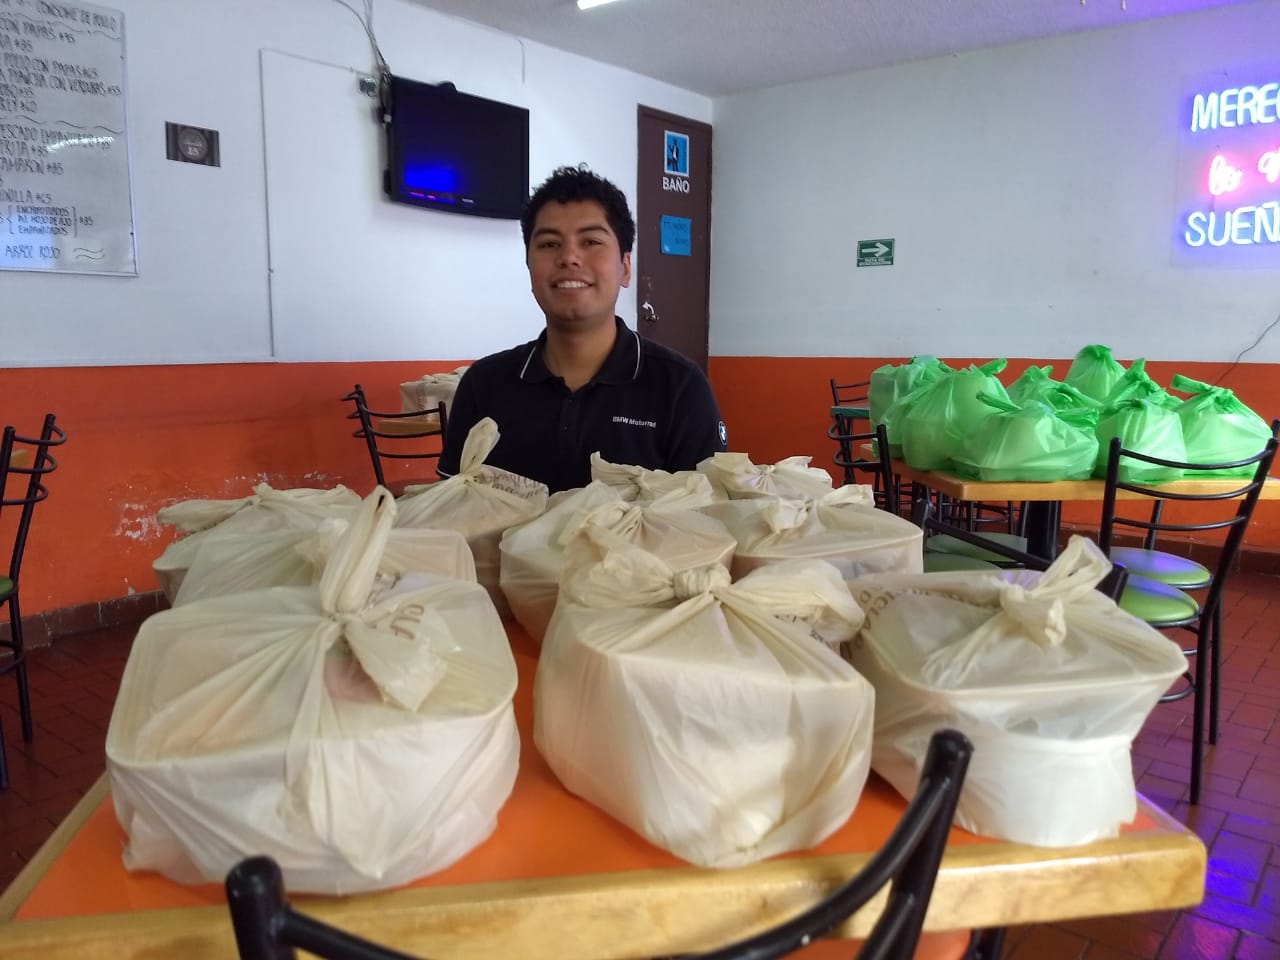 Solidarios, micro empresarios xalapeños brindan alimento a más necesitados